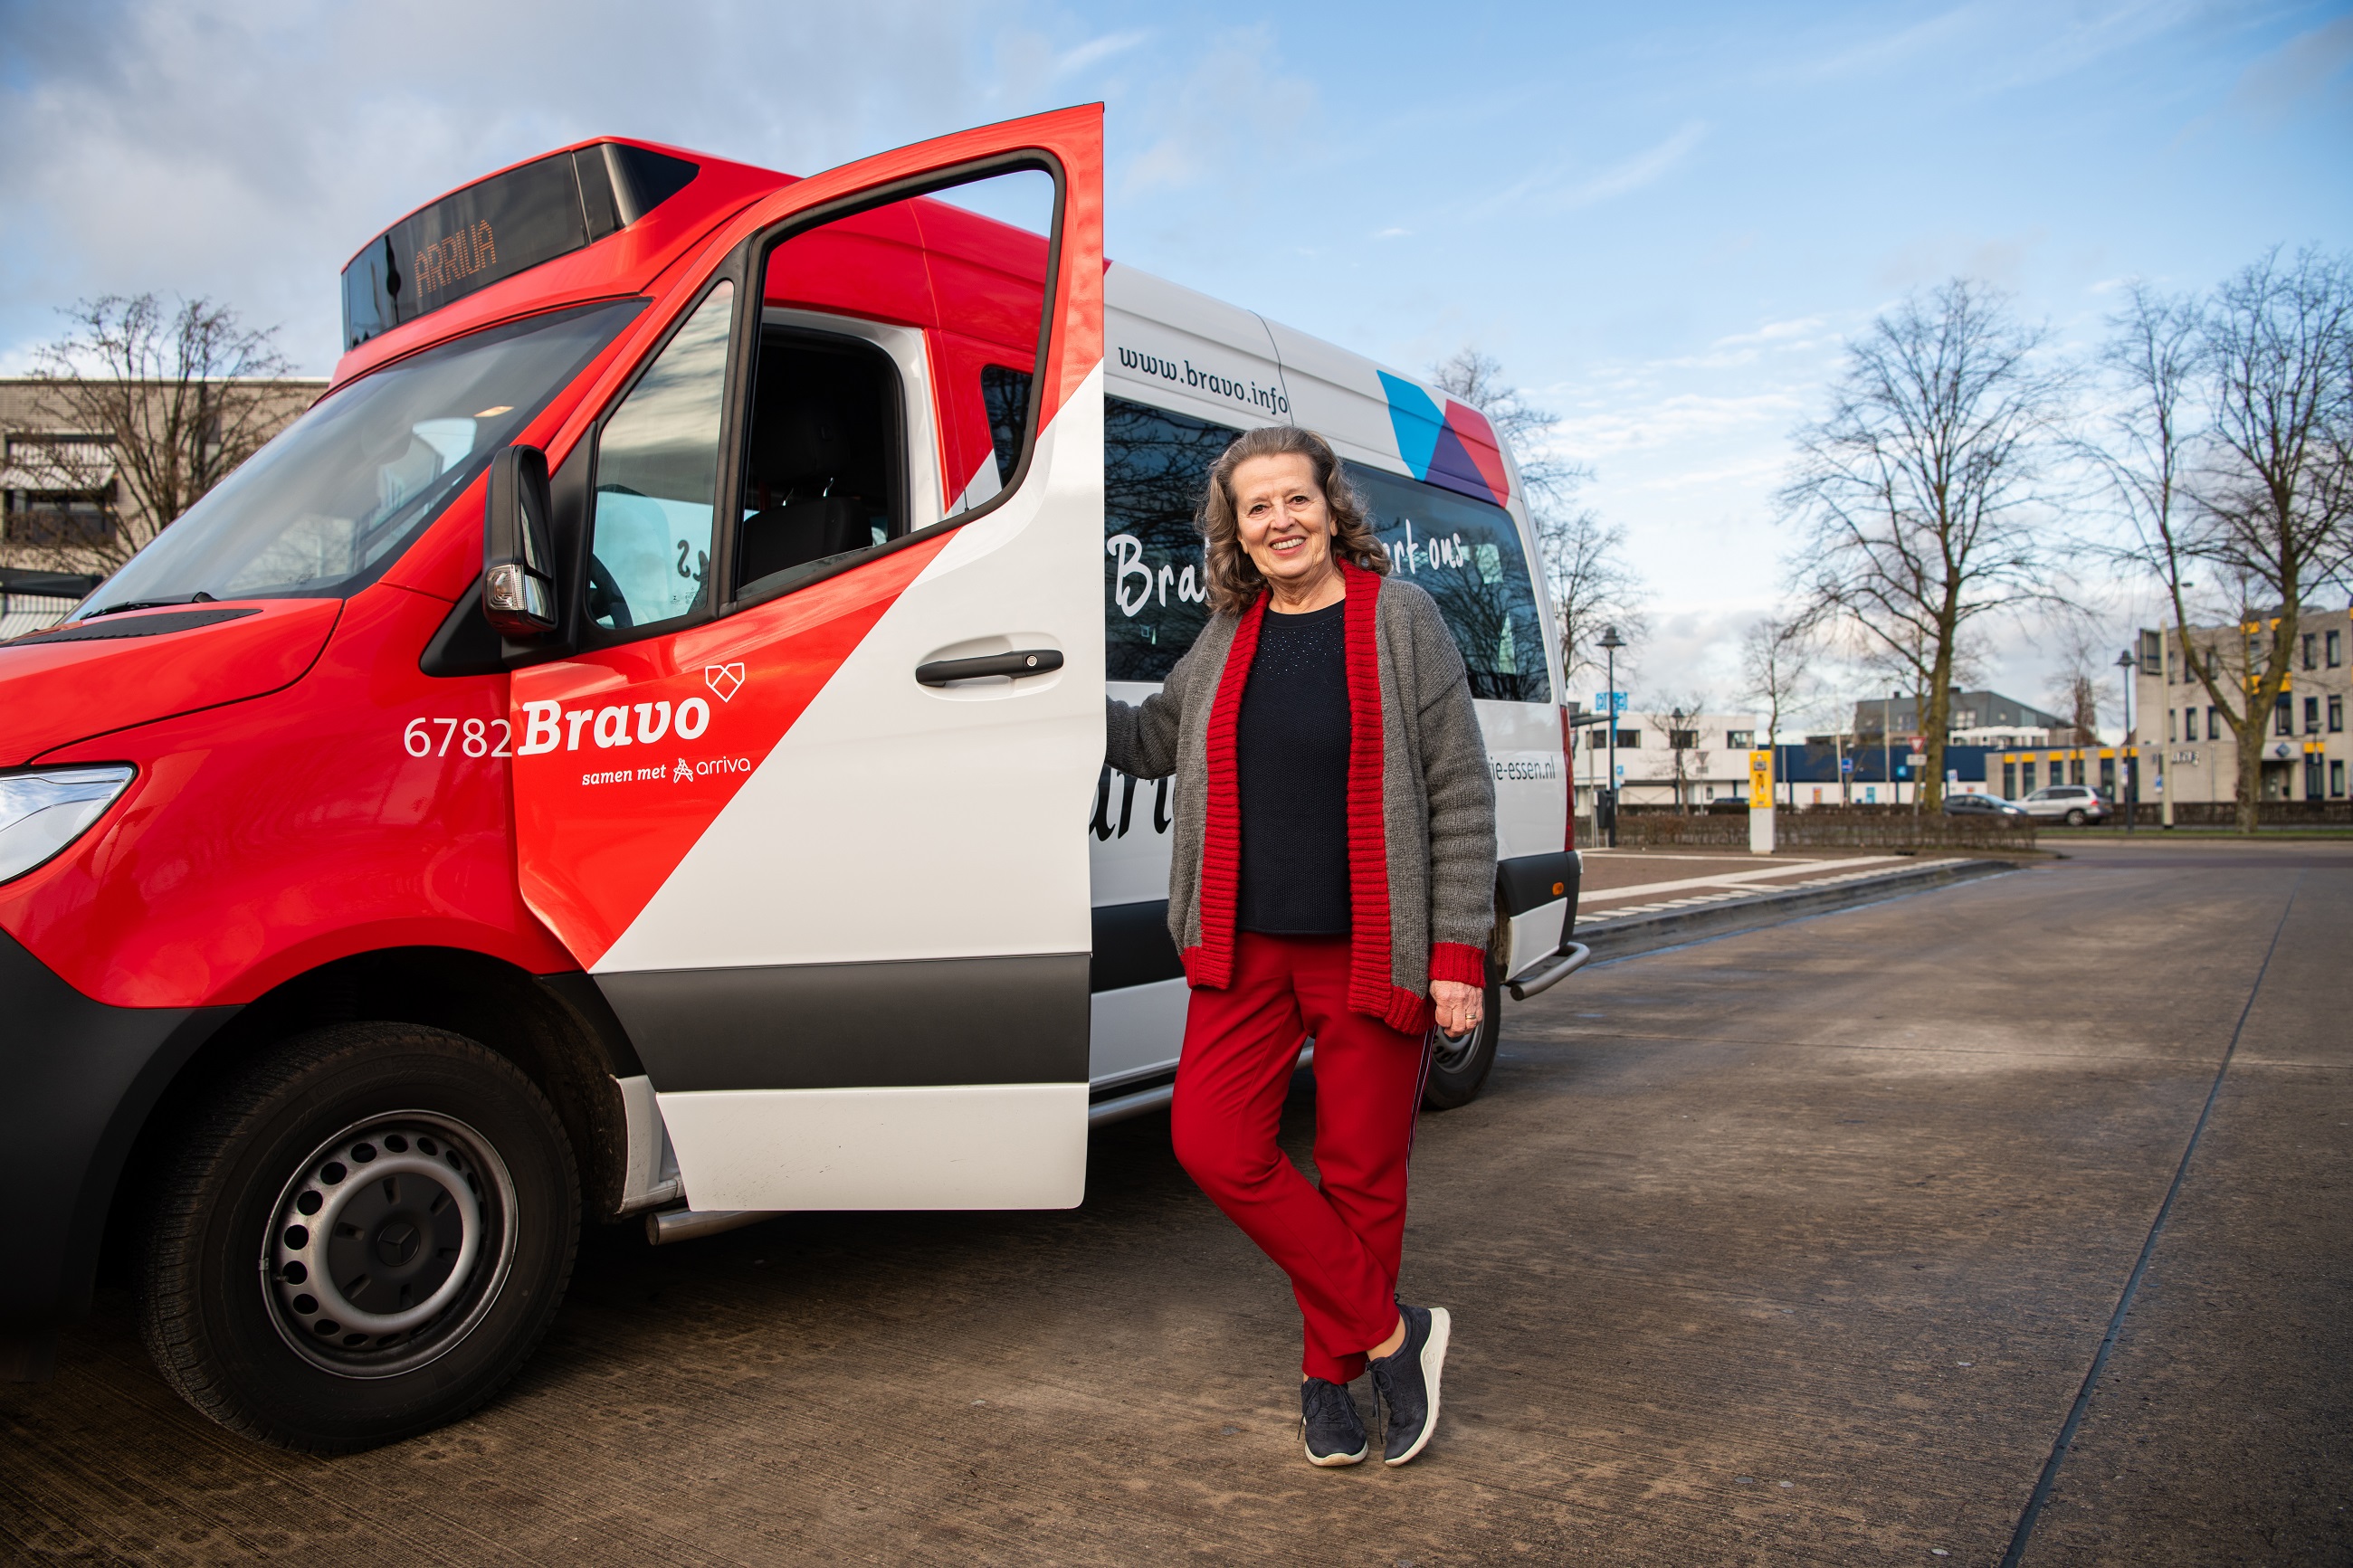 Lachende vrouw staat naast open deur van rood-wit buurtbusje in Brabant.